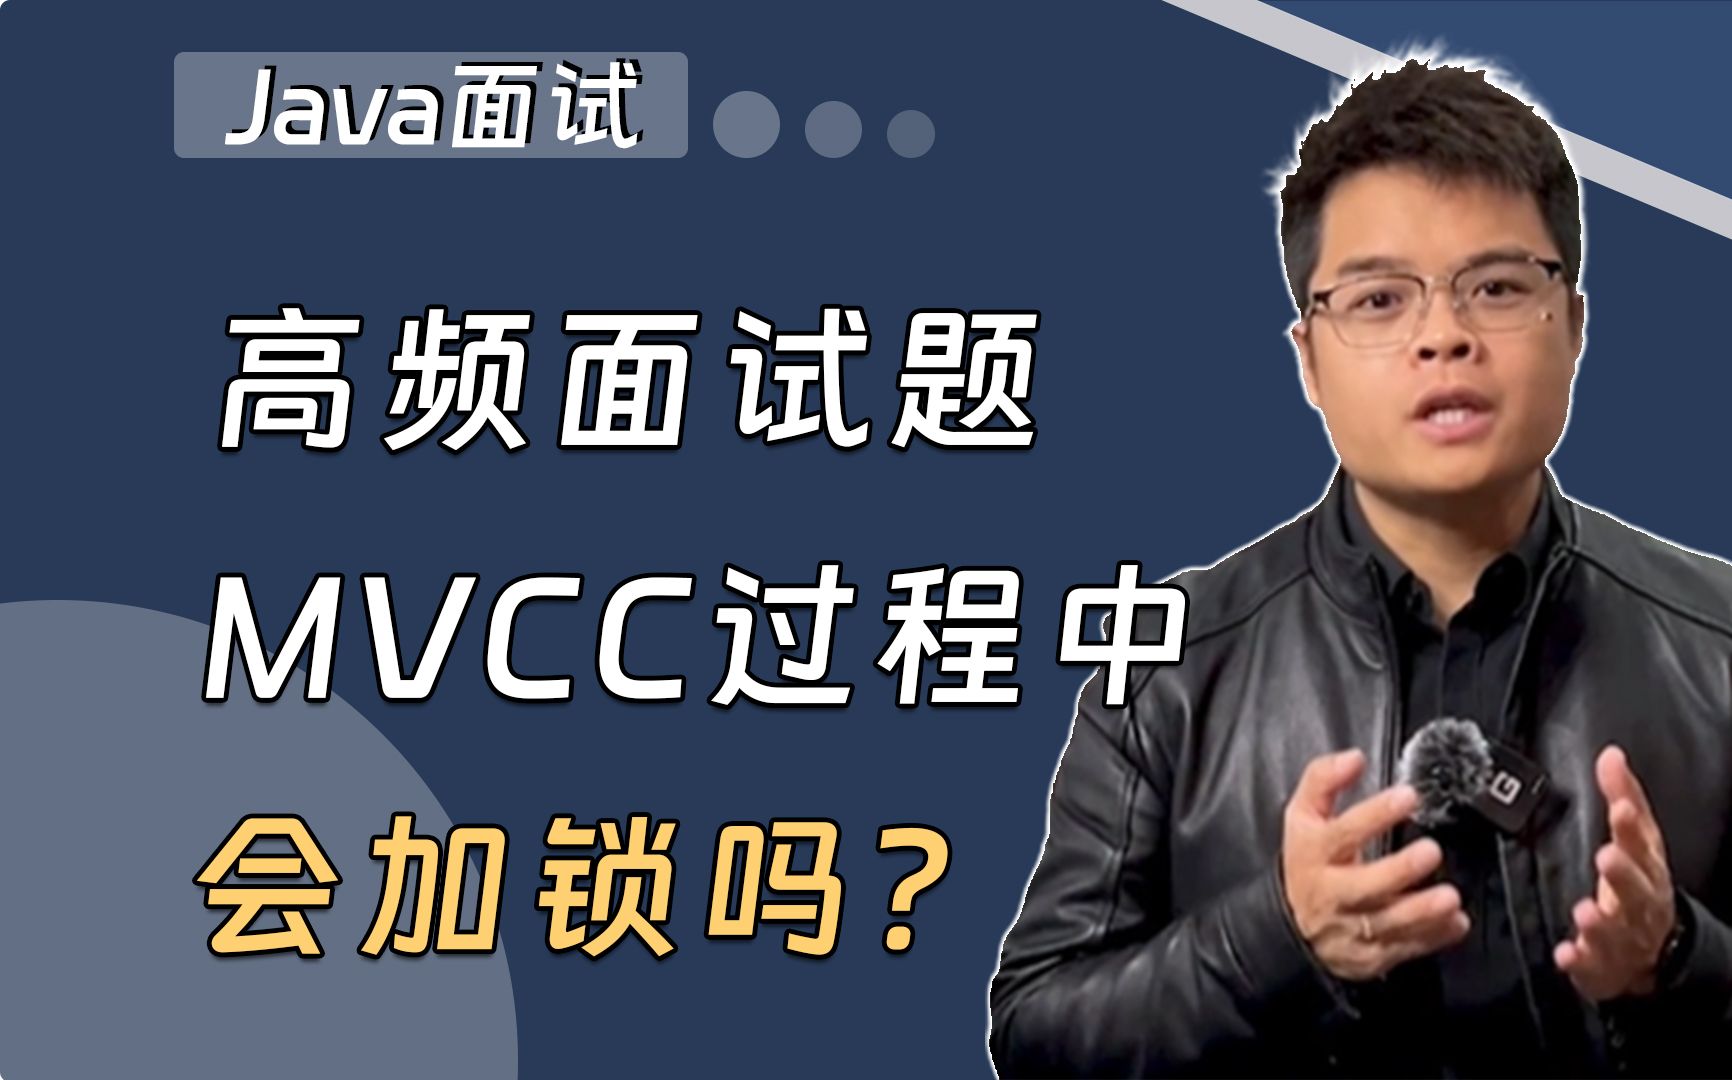 【Java面试】高频面试题：MVCC过程中会加锁吗？